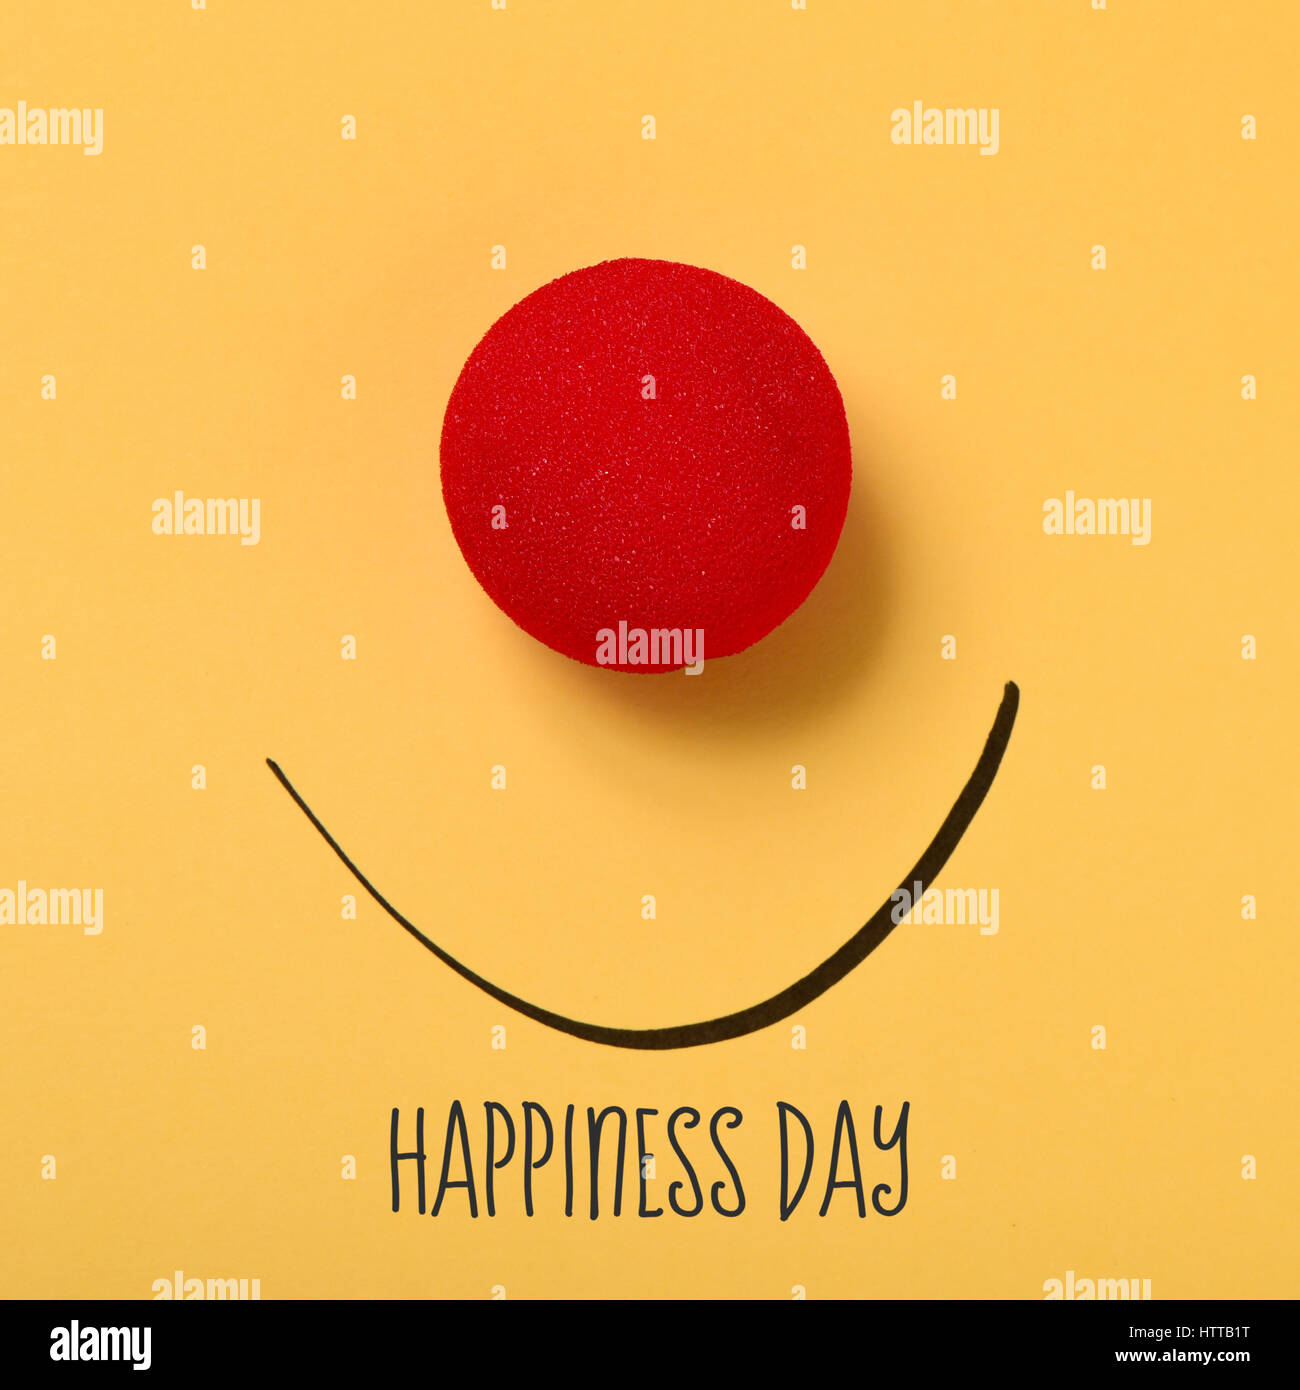 El texto de la felicidad del día, una nariz de payaso roja y una sonrisa dibujada sobre un fondo amarillo Foto de stock